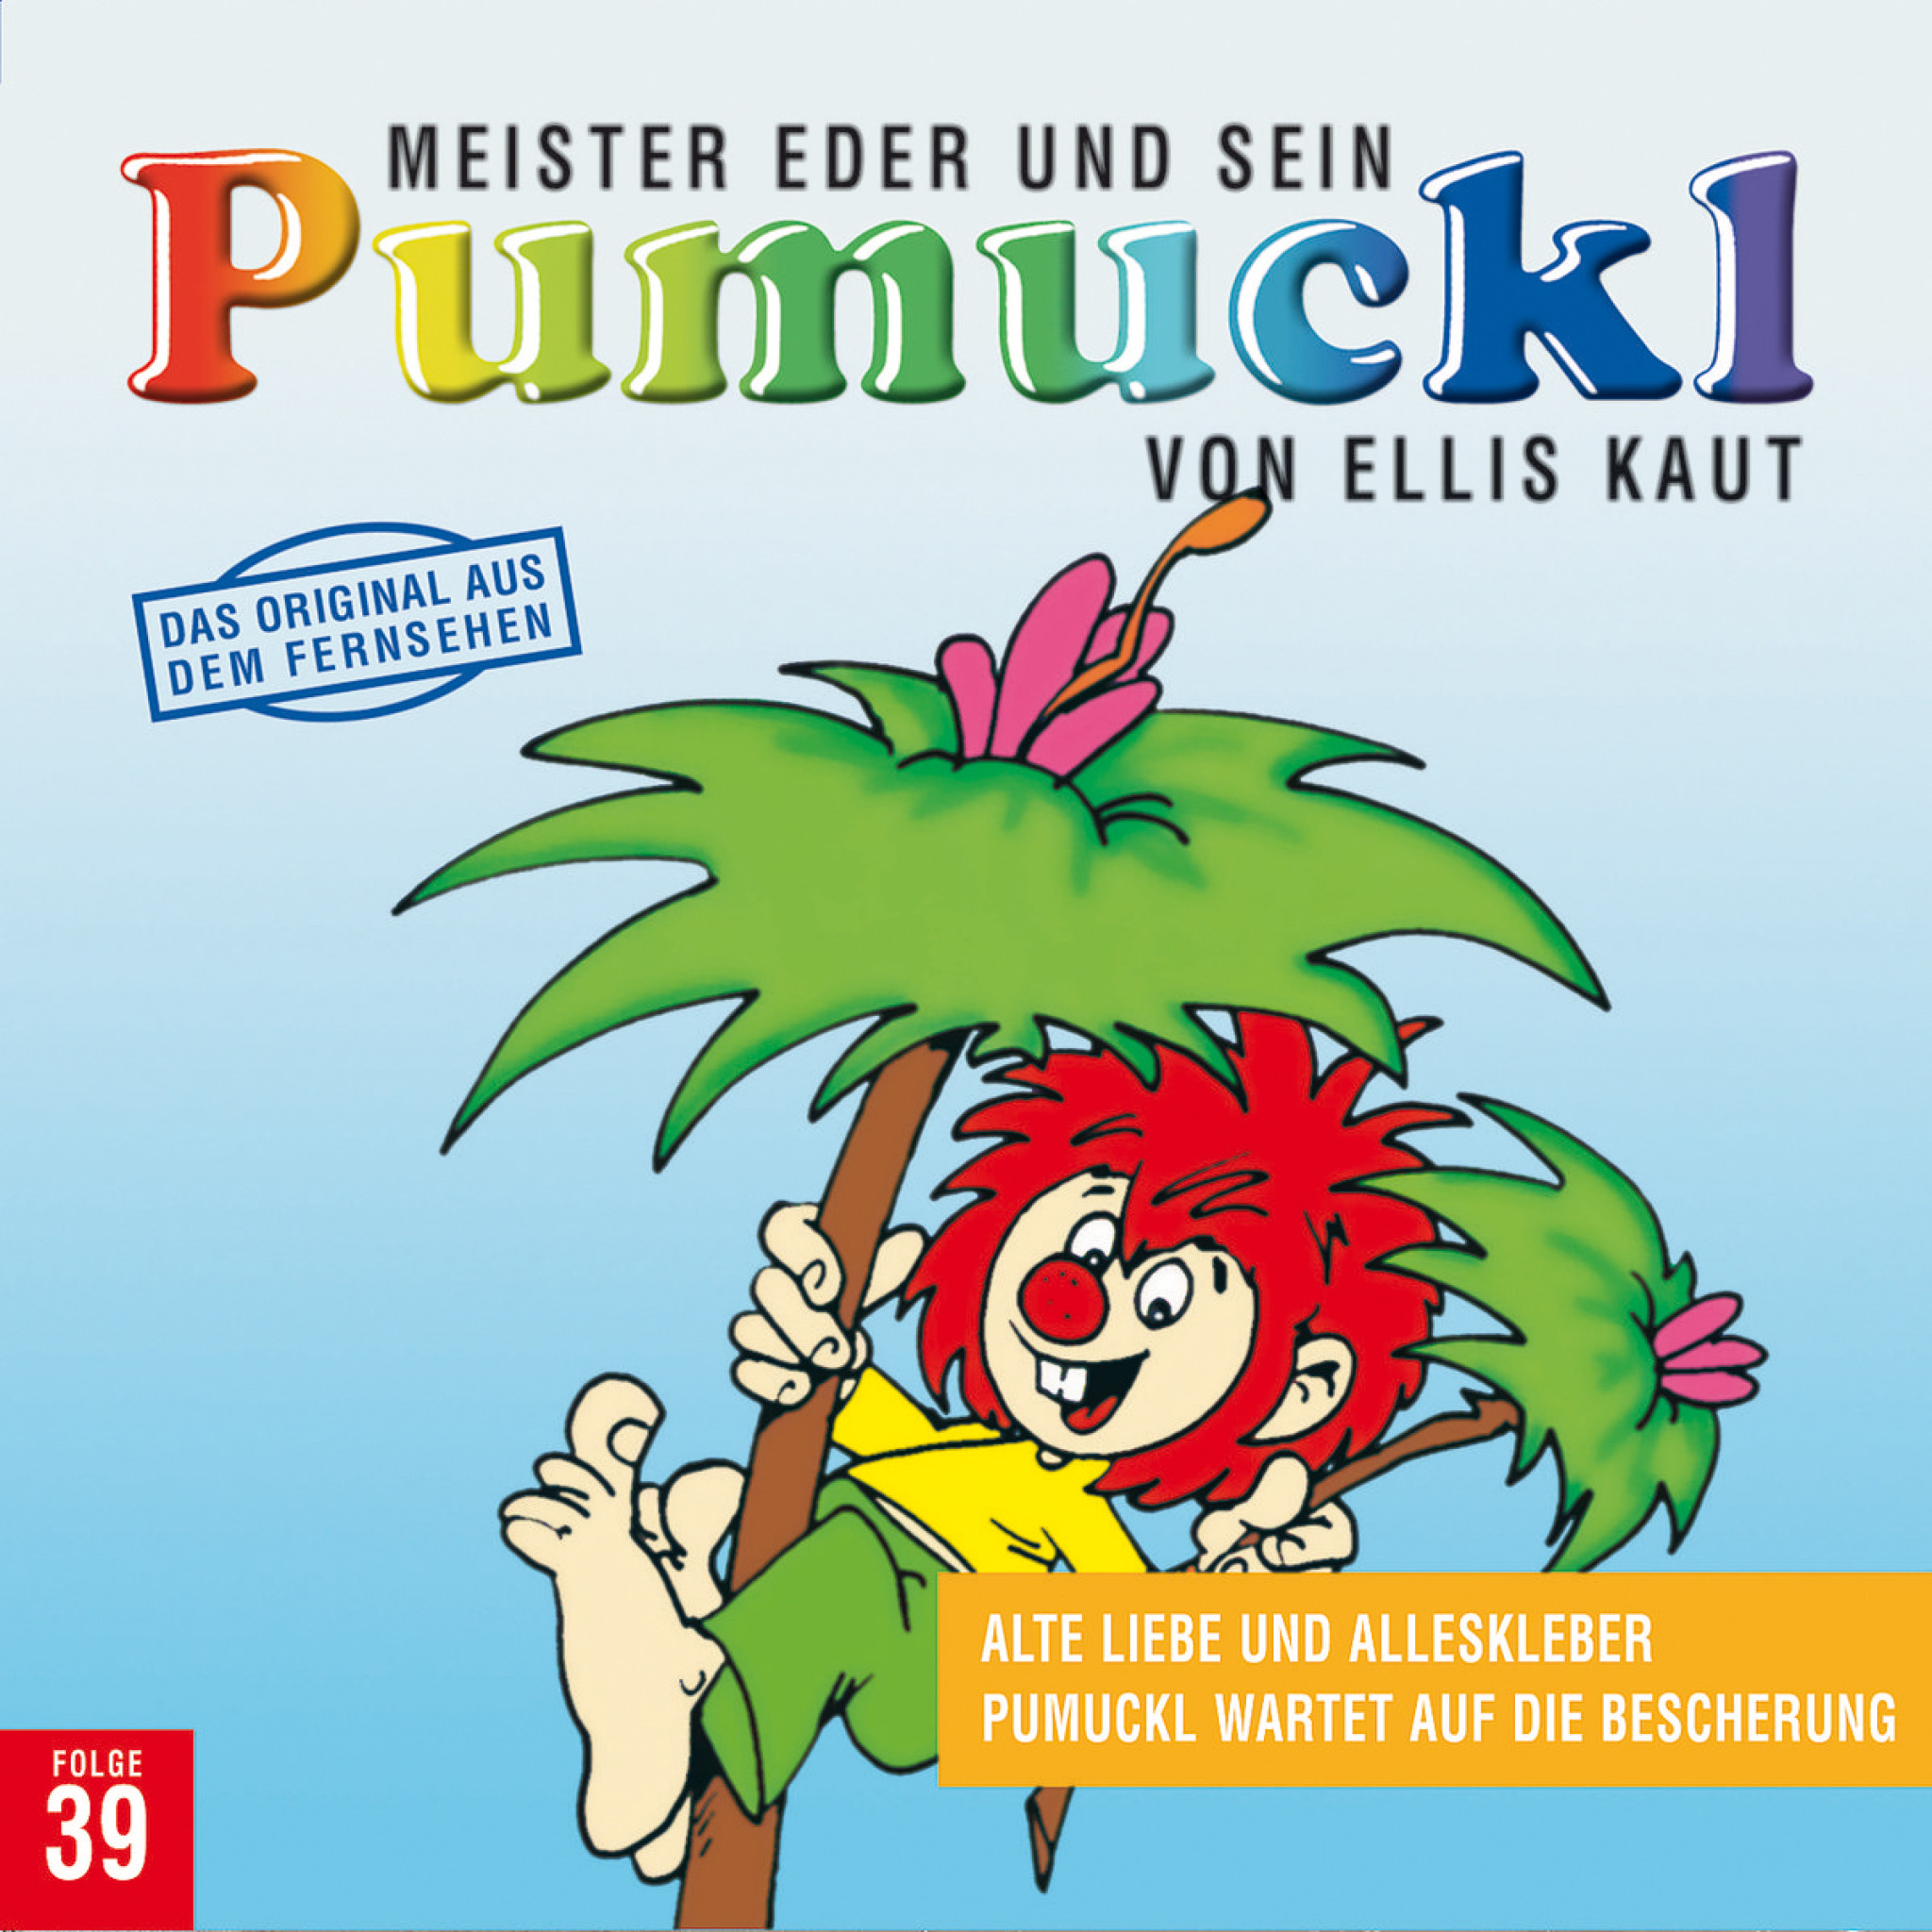 Meister Eder und sein Pumuckl, Folge 39